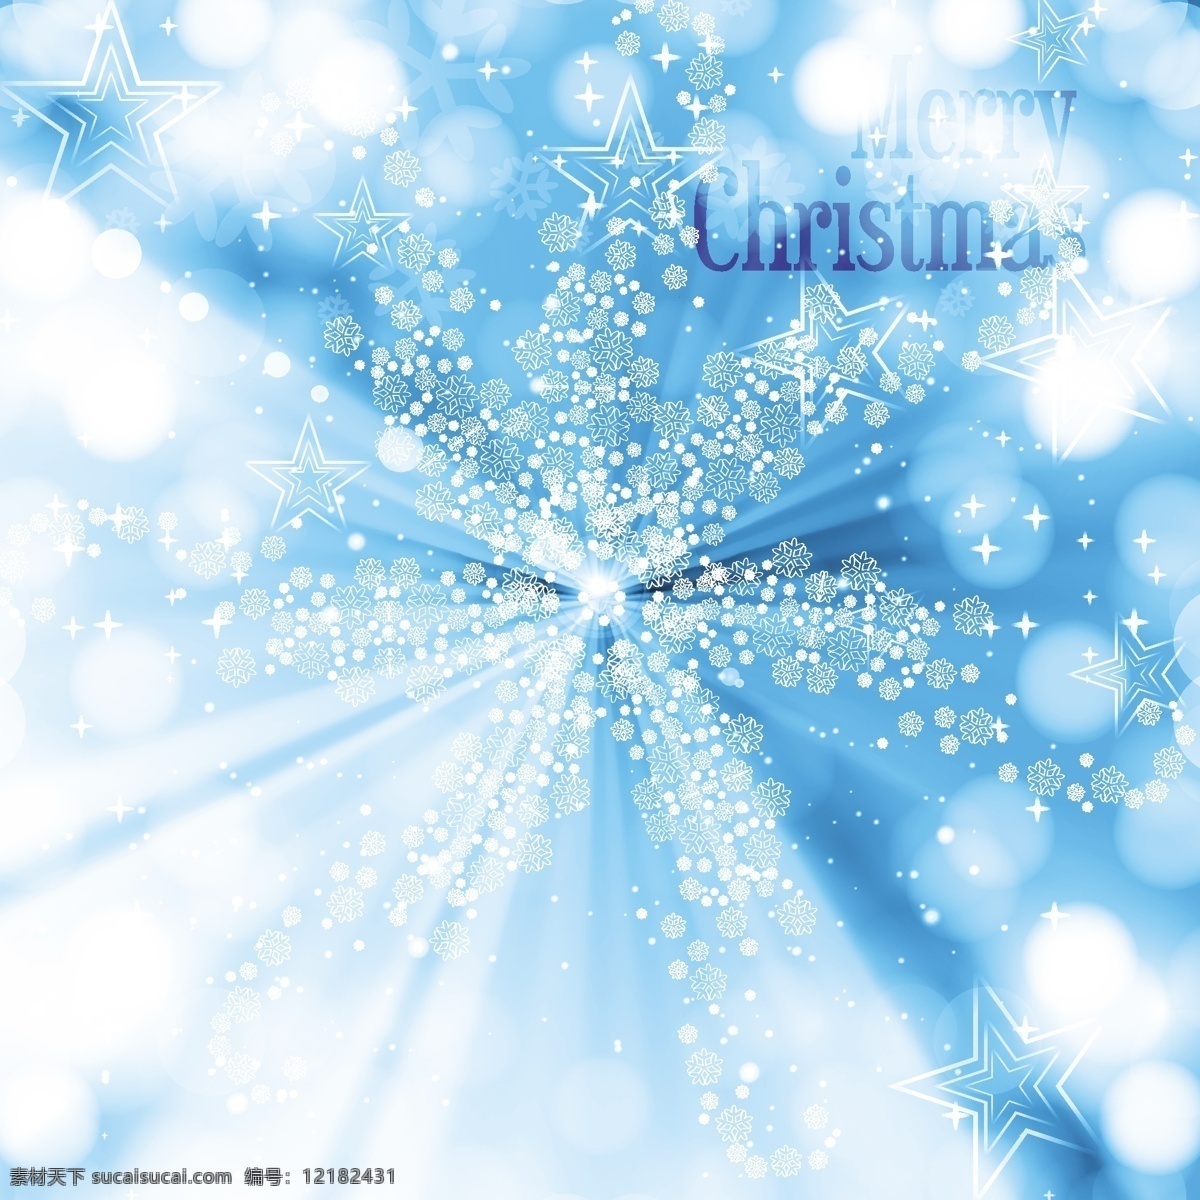 闪亮 圣诞老人 祝福 背景 圣诞节 抽象 卡 模板 雪 圣诞星星 圣诞背景 壁纸 圣诞卡 圣诞 雪花 事件 节日 现代 射线 问候 恒星背景 青色 天蓝色